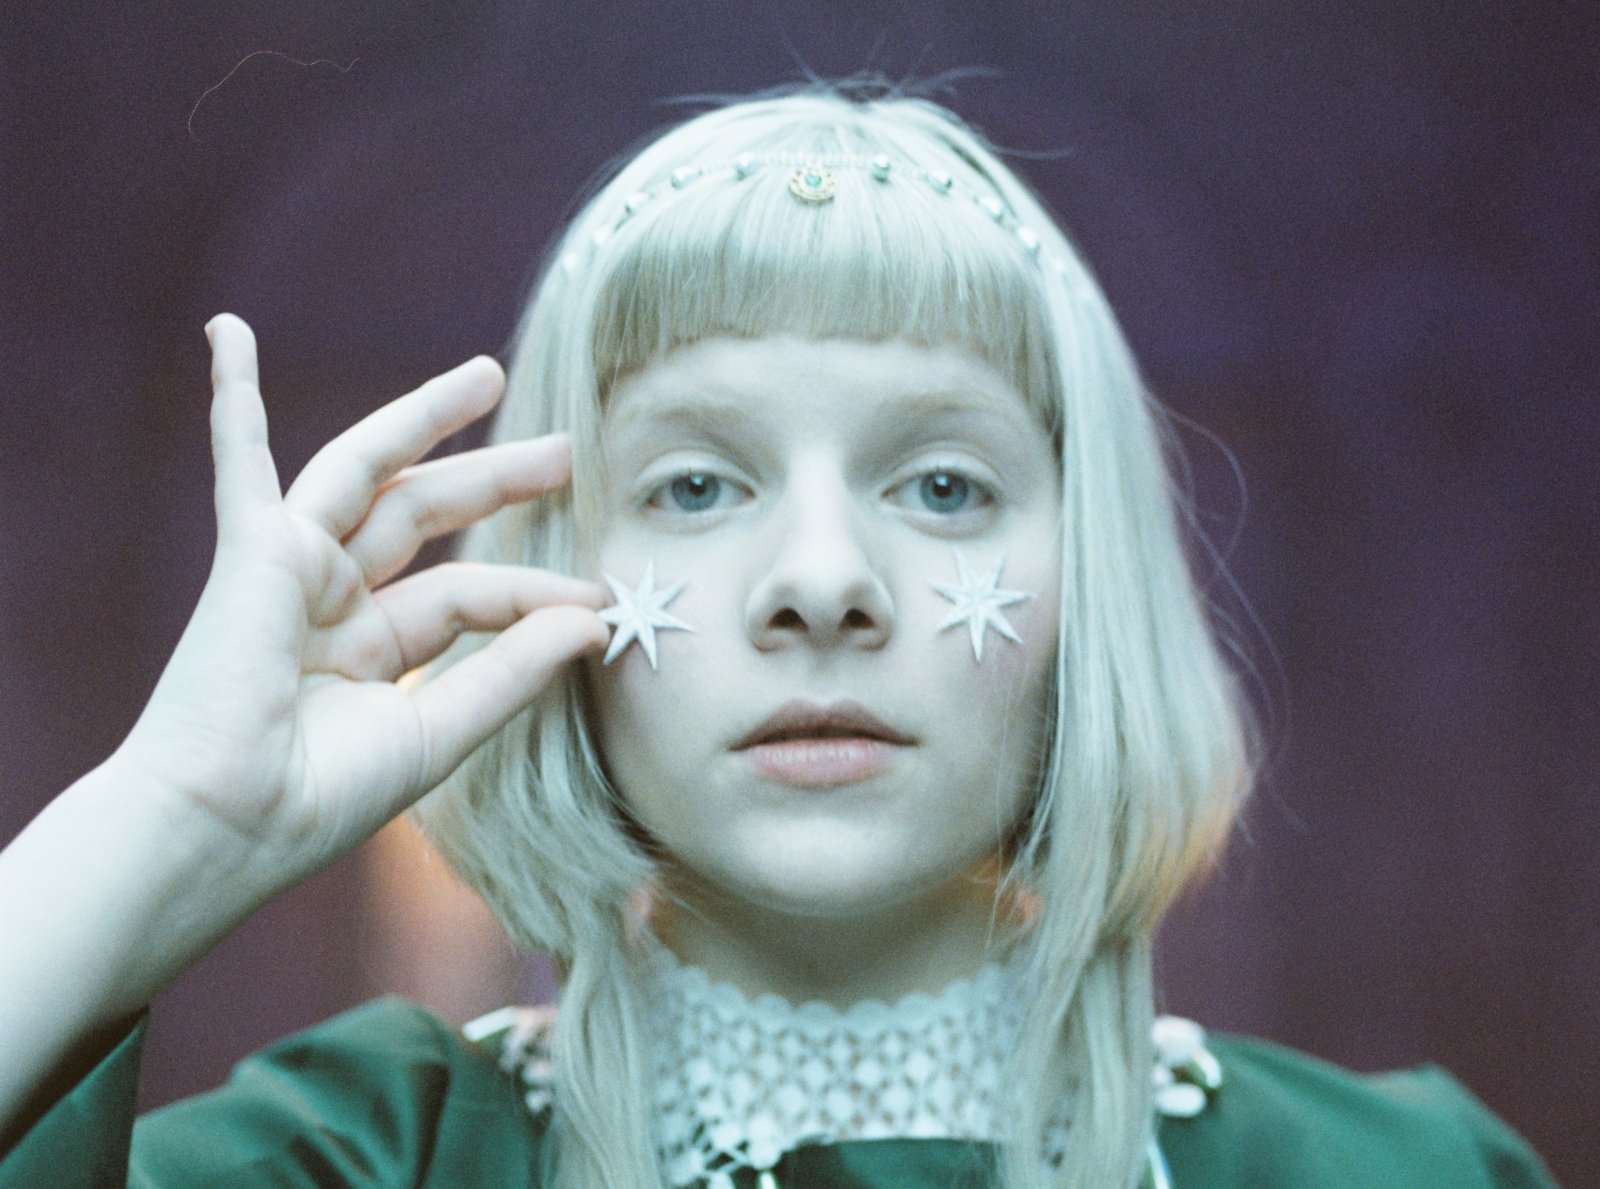 Aurora, fe av norsk musikk og inspirasjon av Billie Eilish, ankommer Litauen